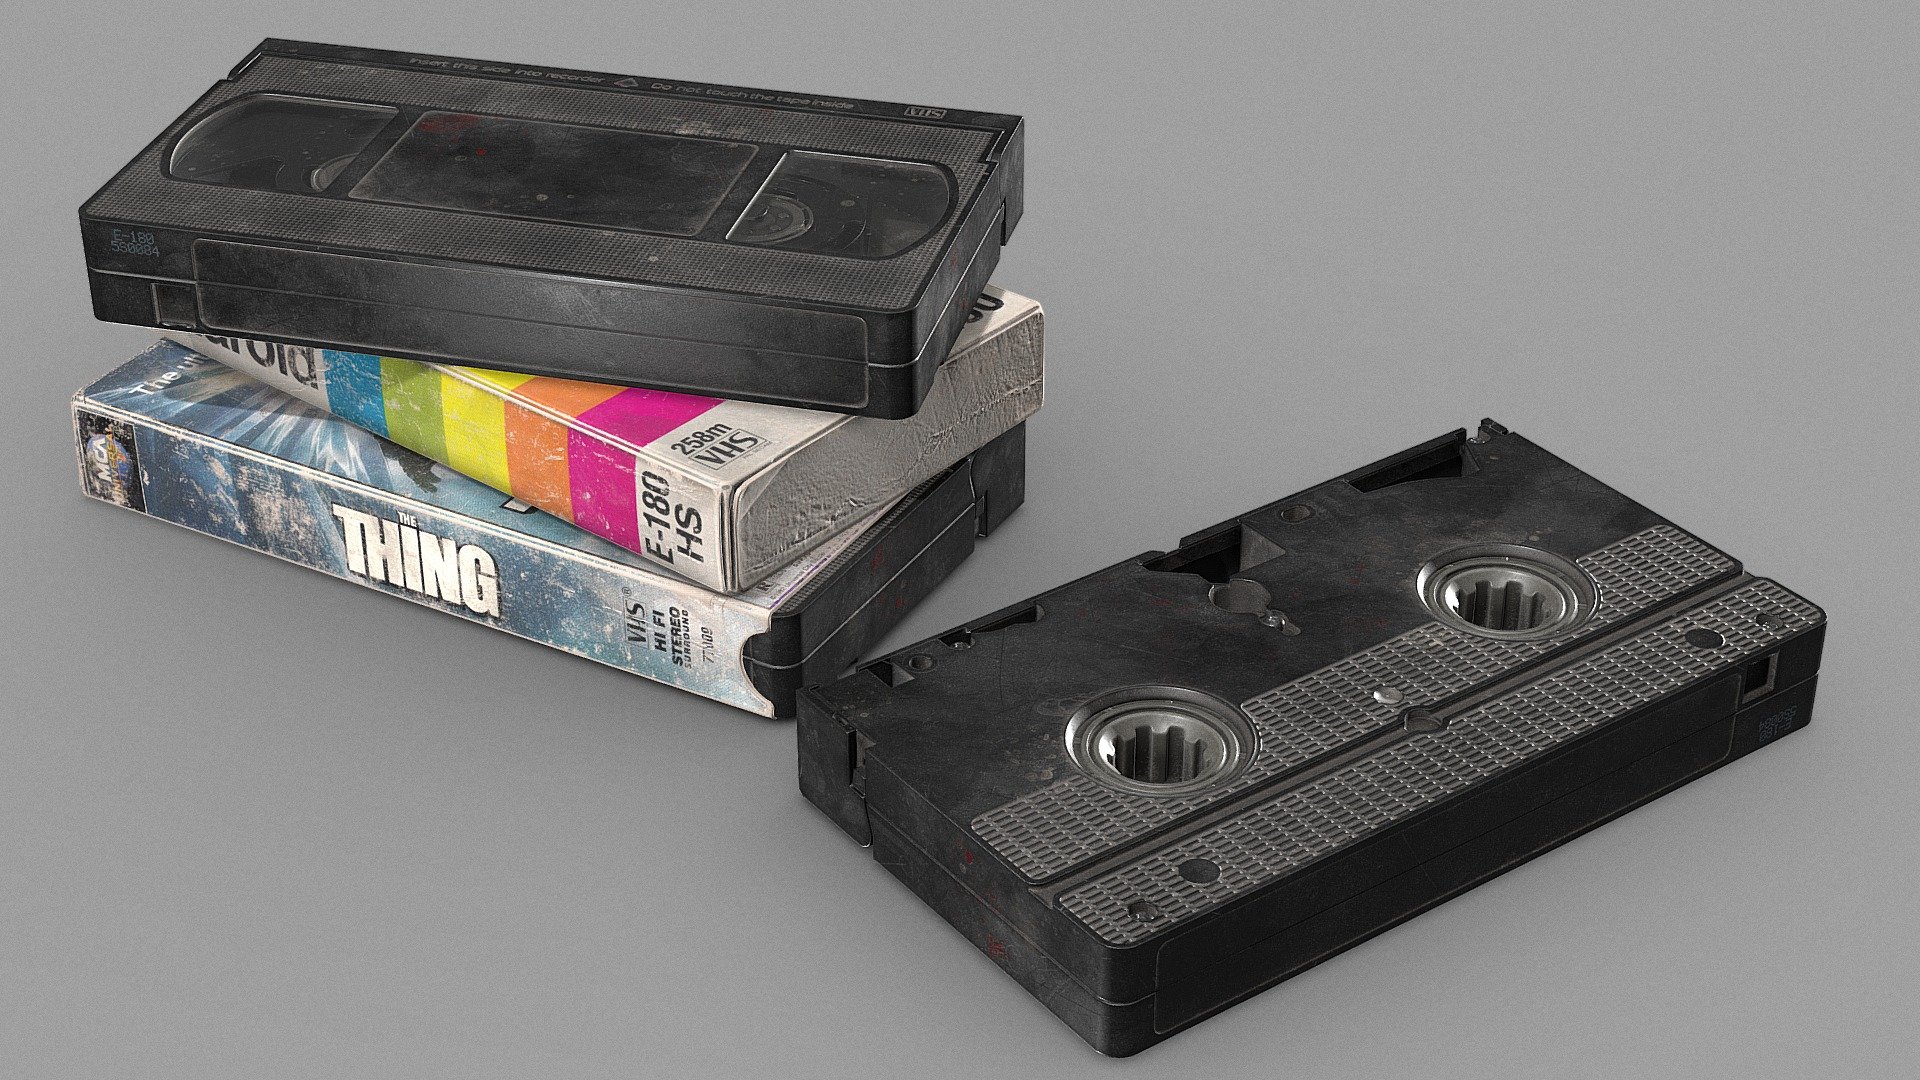 VHS cassette - polys 8 046/tris 14 361 UVSet1 - 106 px/cm
VHS cover 1 - polys 352/tris 594 UVSet2 - 124 px/cm
VHS cover 2 - polys 361/tris 600 UVSet 3 - 135 px/cm - VHS - Download Free 3D model by Dolgov (@Dolgov12) 3d model